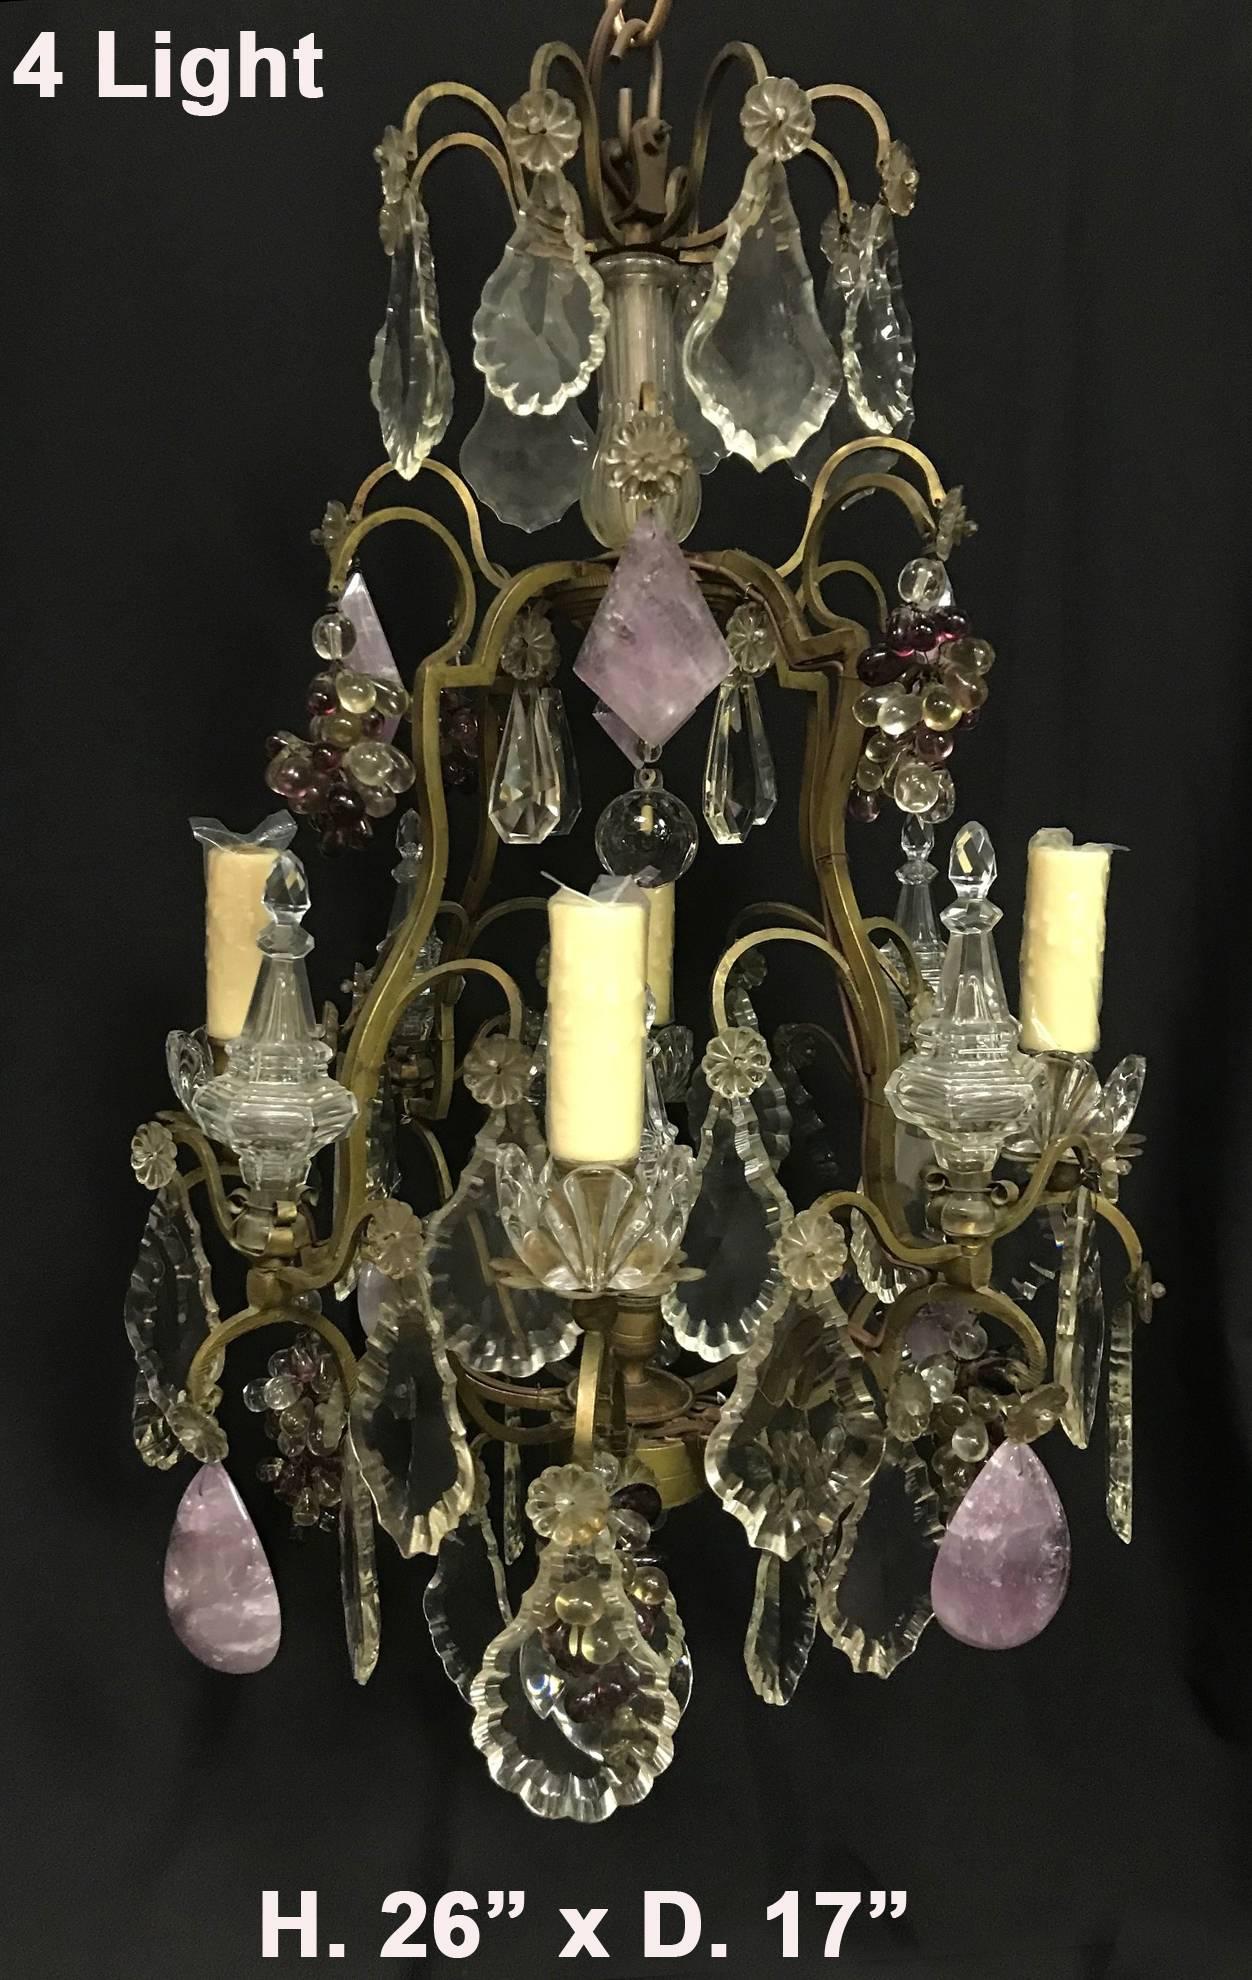 Eine schöne Französisch antiken Stil Louis XV Amethyst Quarz und geschliffenem Kristall Bronze vier Licht Kronleuchter.
Mit handgeschliffenem und poliertem Amethystquarz, geschliffenem Kristall und Amethystkristalltrauben verziert. 
Perfekt für